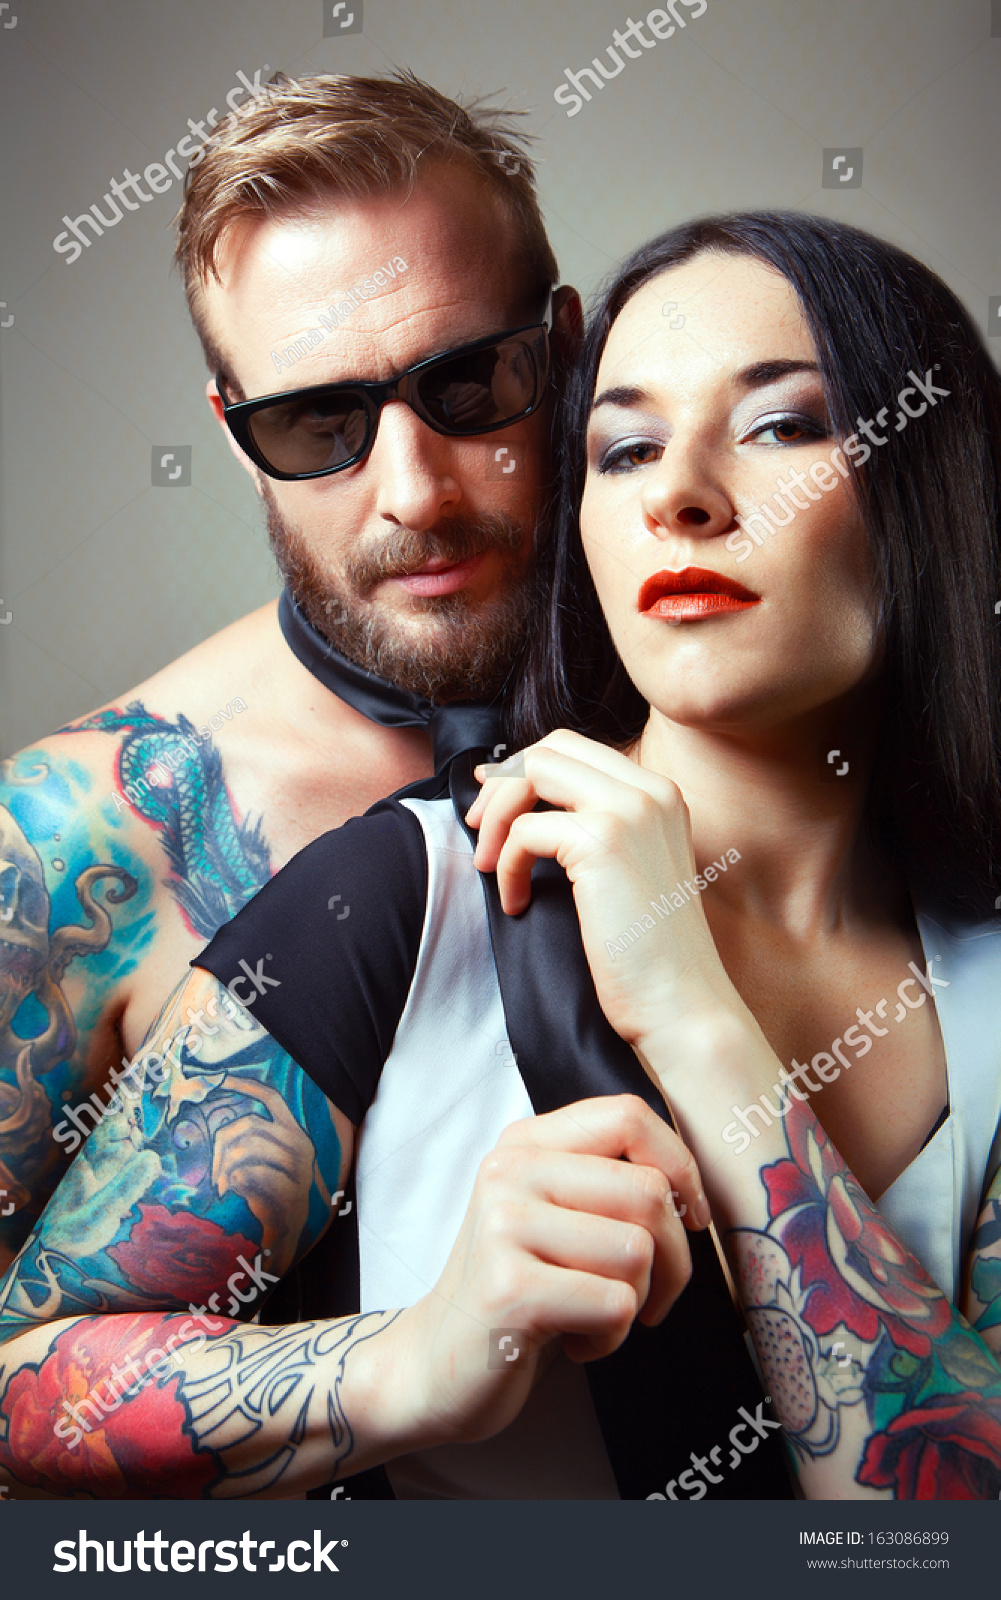 Sexy Tattooed Women